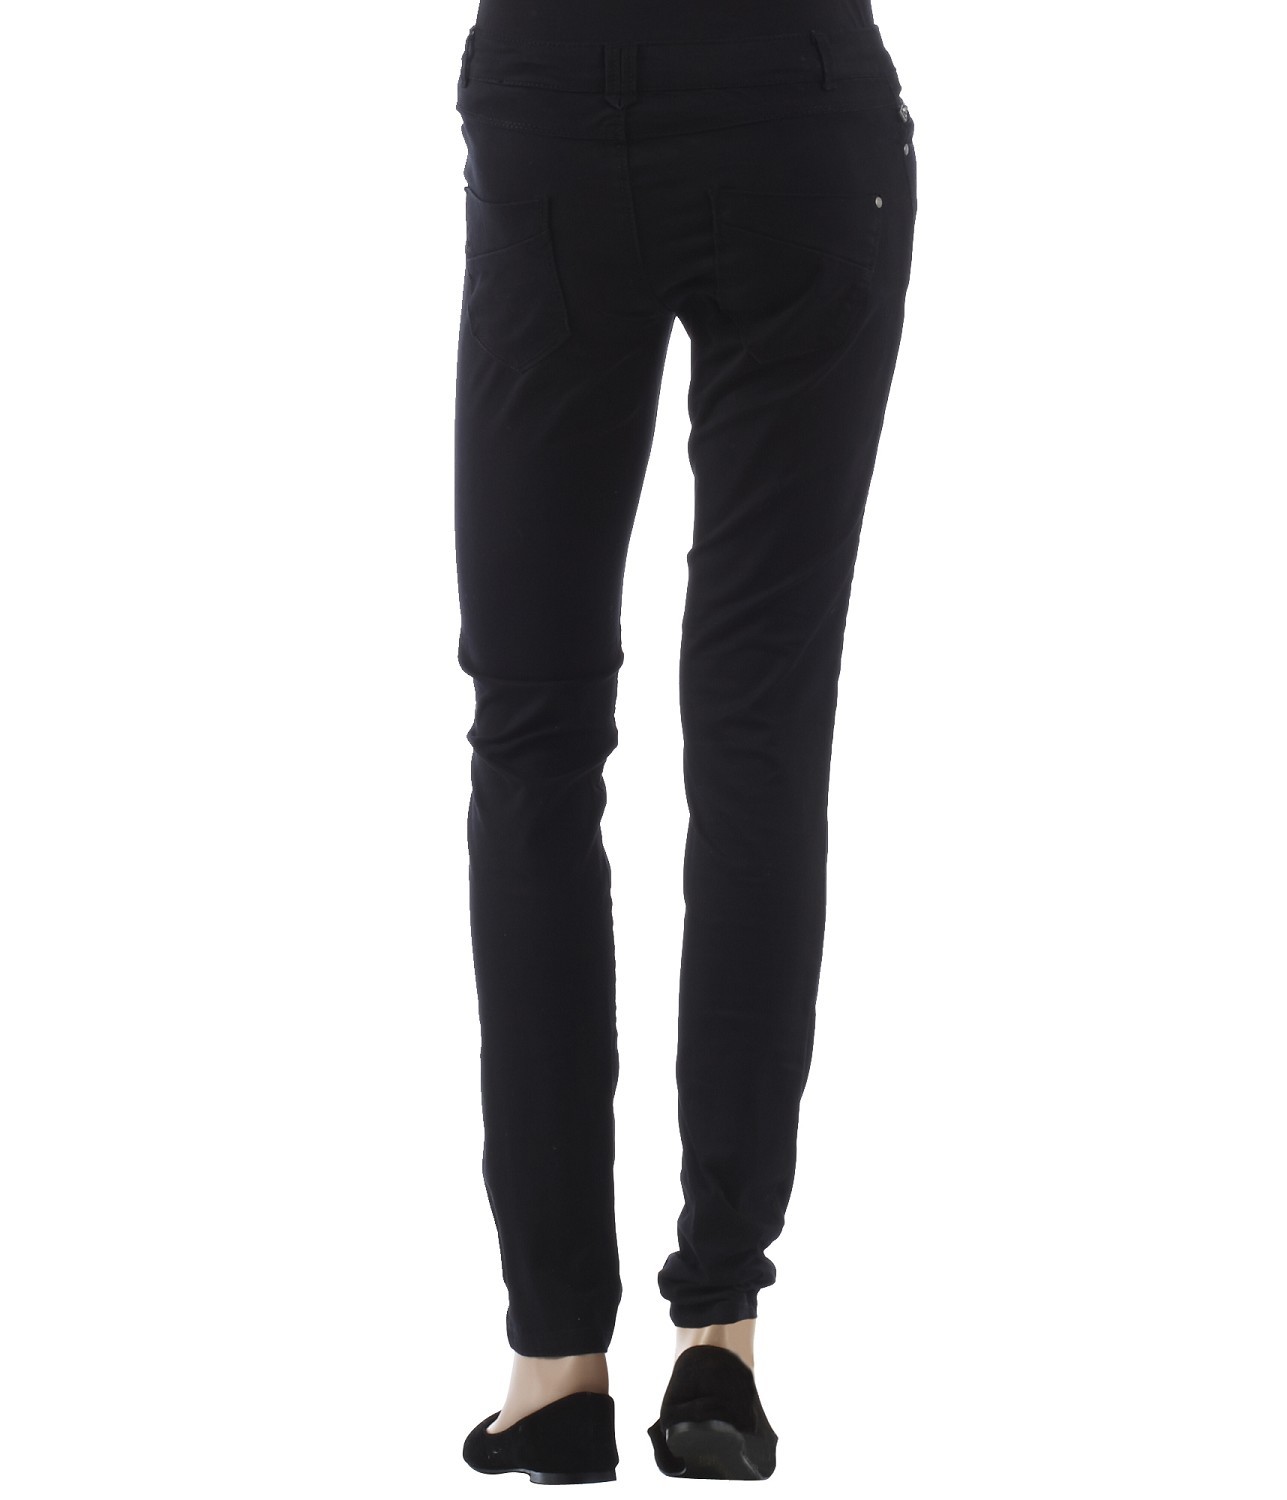 Camaieu fekete ruházat divatos hosszú nadrág 2013 fotója